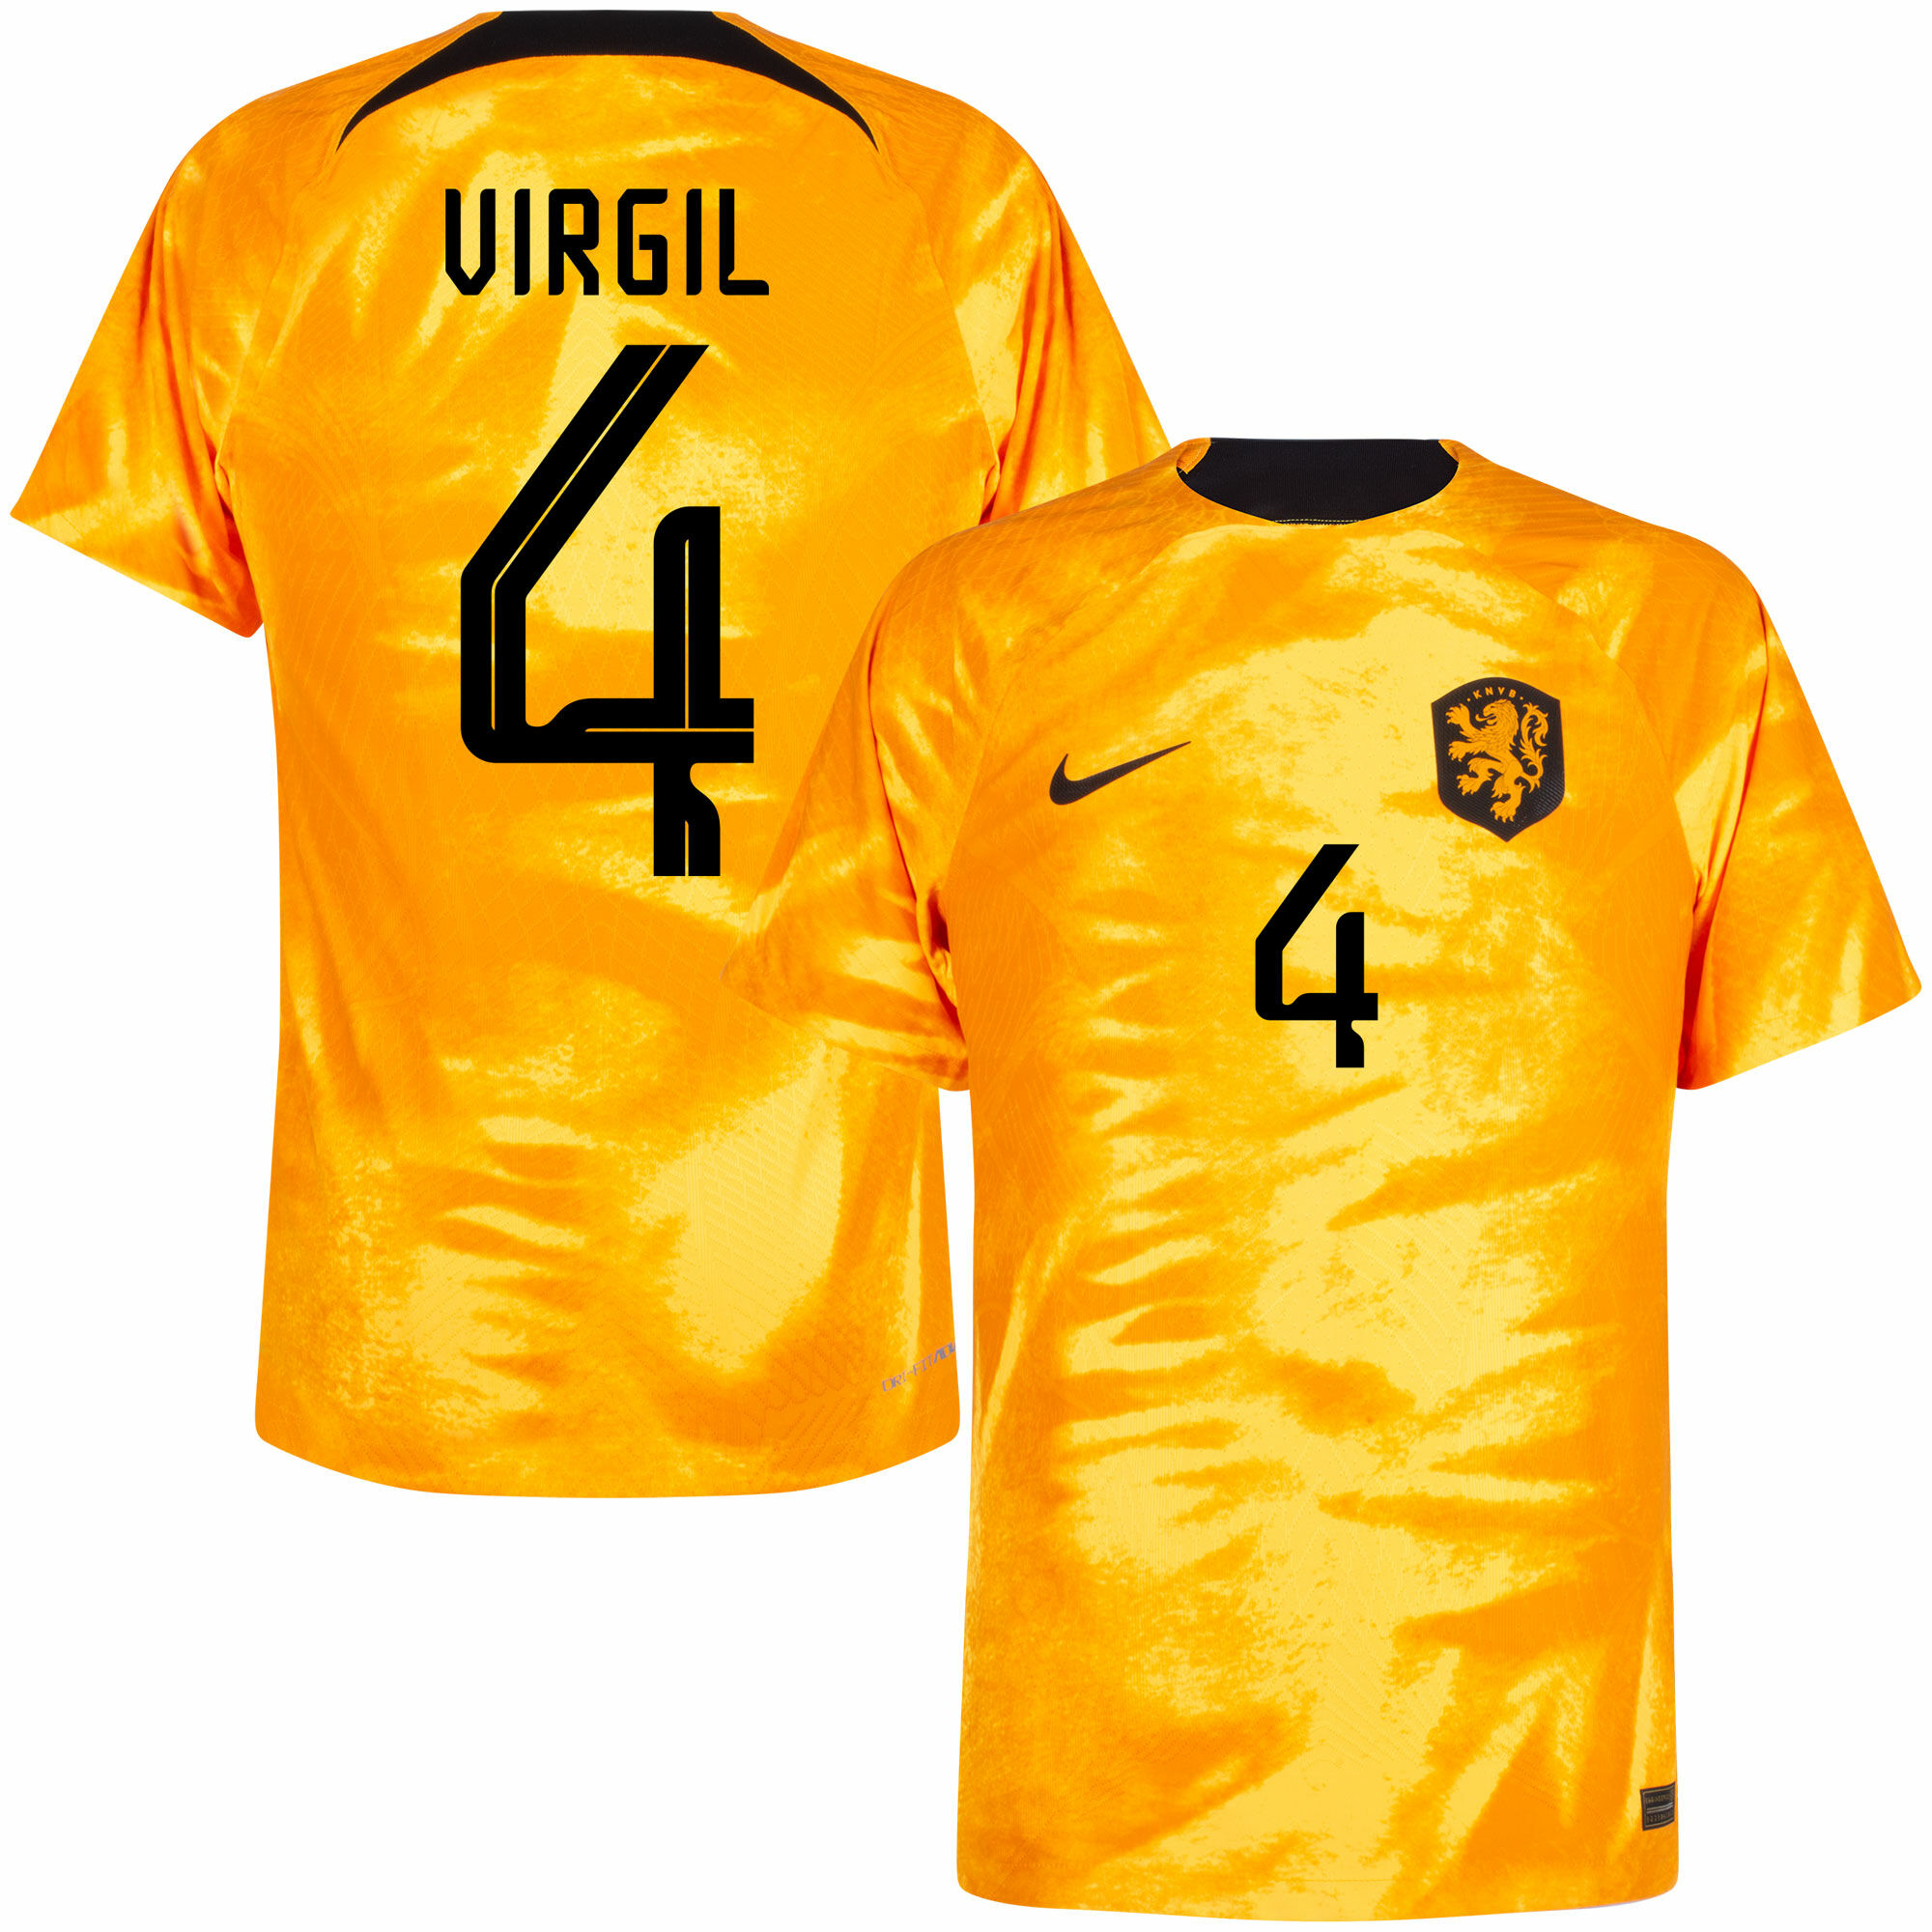 Nizozemí - Dres fotbalový "Match" - oranžový, oficiální potisk, číslo 4, domácí, sezóna 2022/23, Dri-FIT ADV, Virgil van Dijk